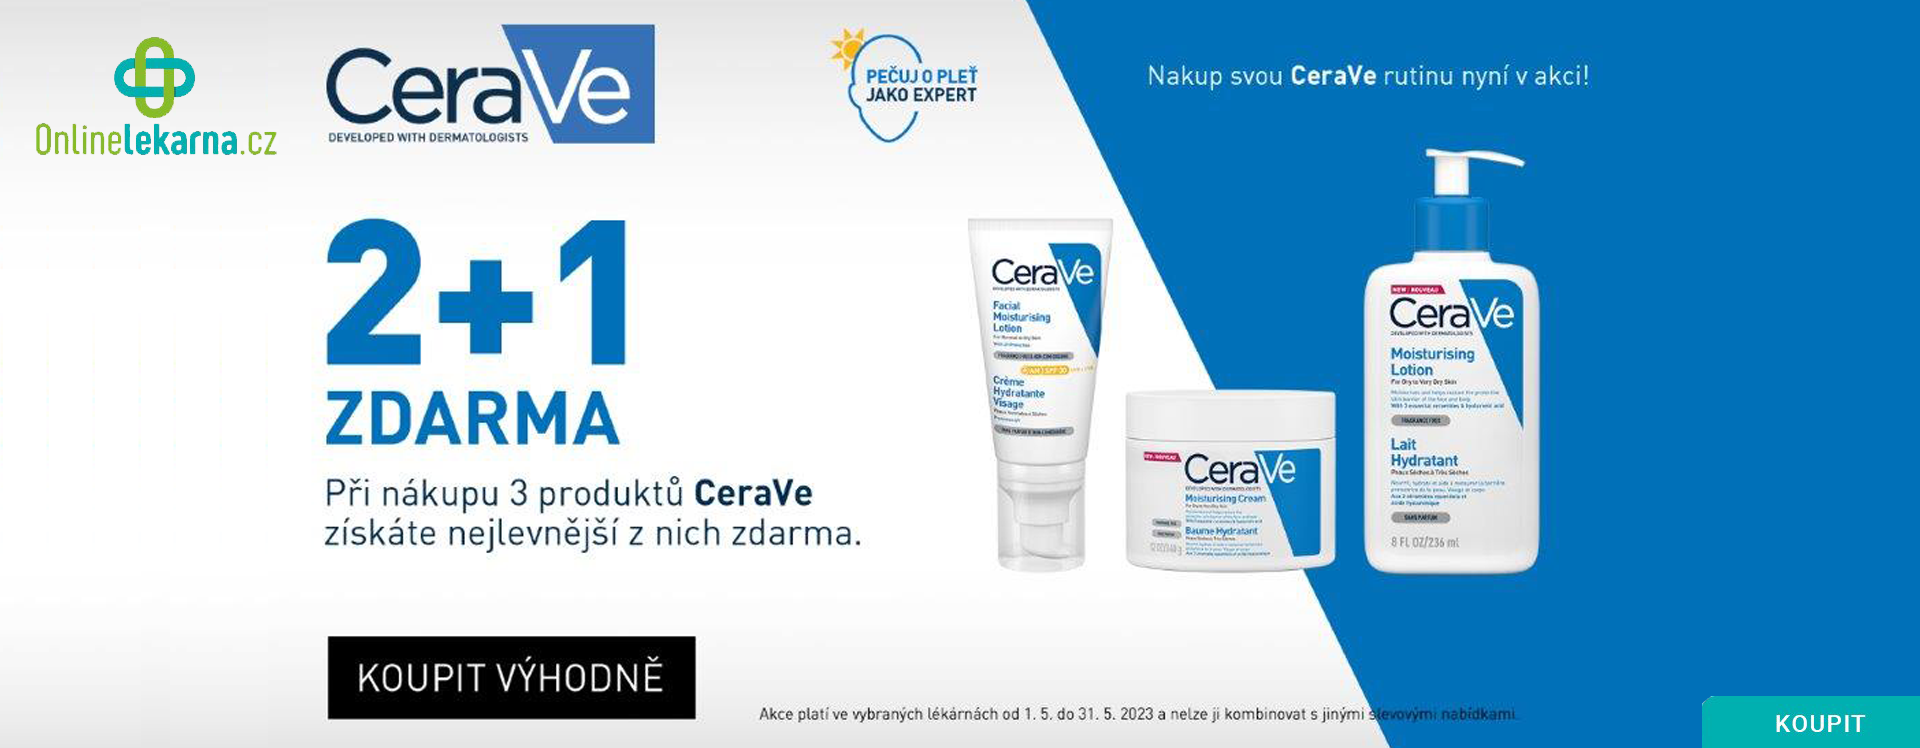 Onlinelekarna.cz | Cerave Akce 2+1 Zdarma